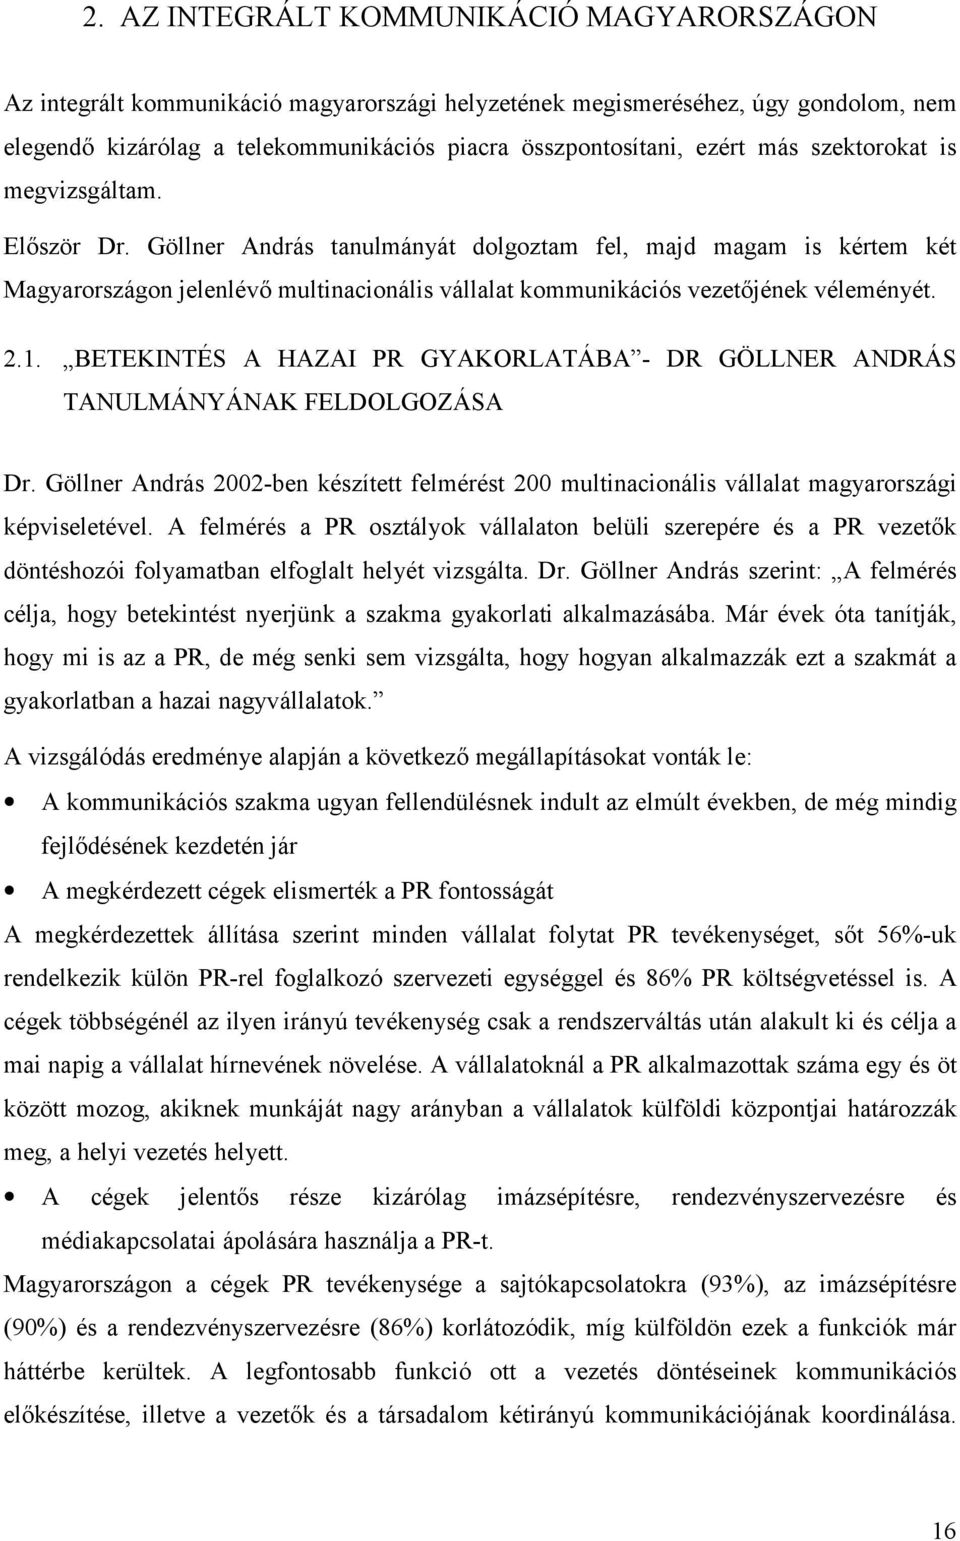 2.1. BETEKINTÉS A HAZAI PR GYAKORLATÁBA - DR GÖLLNER ANDRÁS TANULMÁNYÁNAK FELDOLGOZÁSA Dr. Göllner András 2002-ben készített felmérést 200 multinacionális vállalat magyarországi képviseletével.